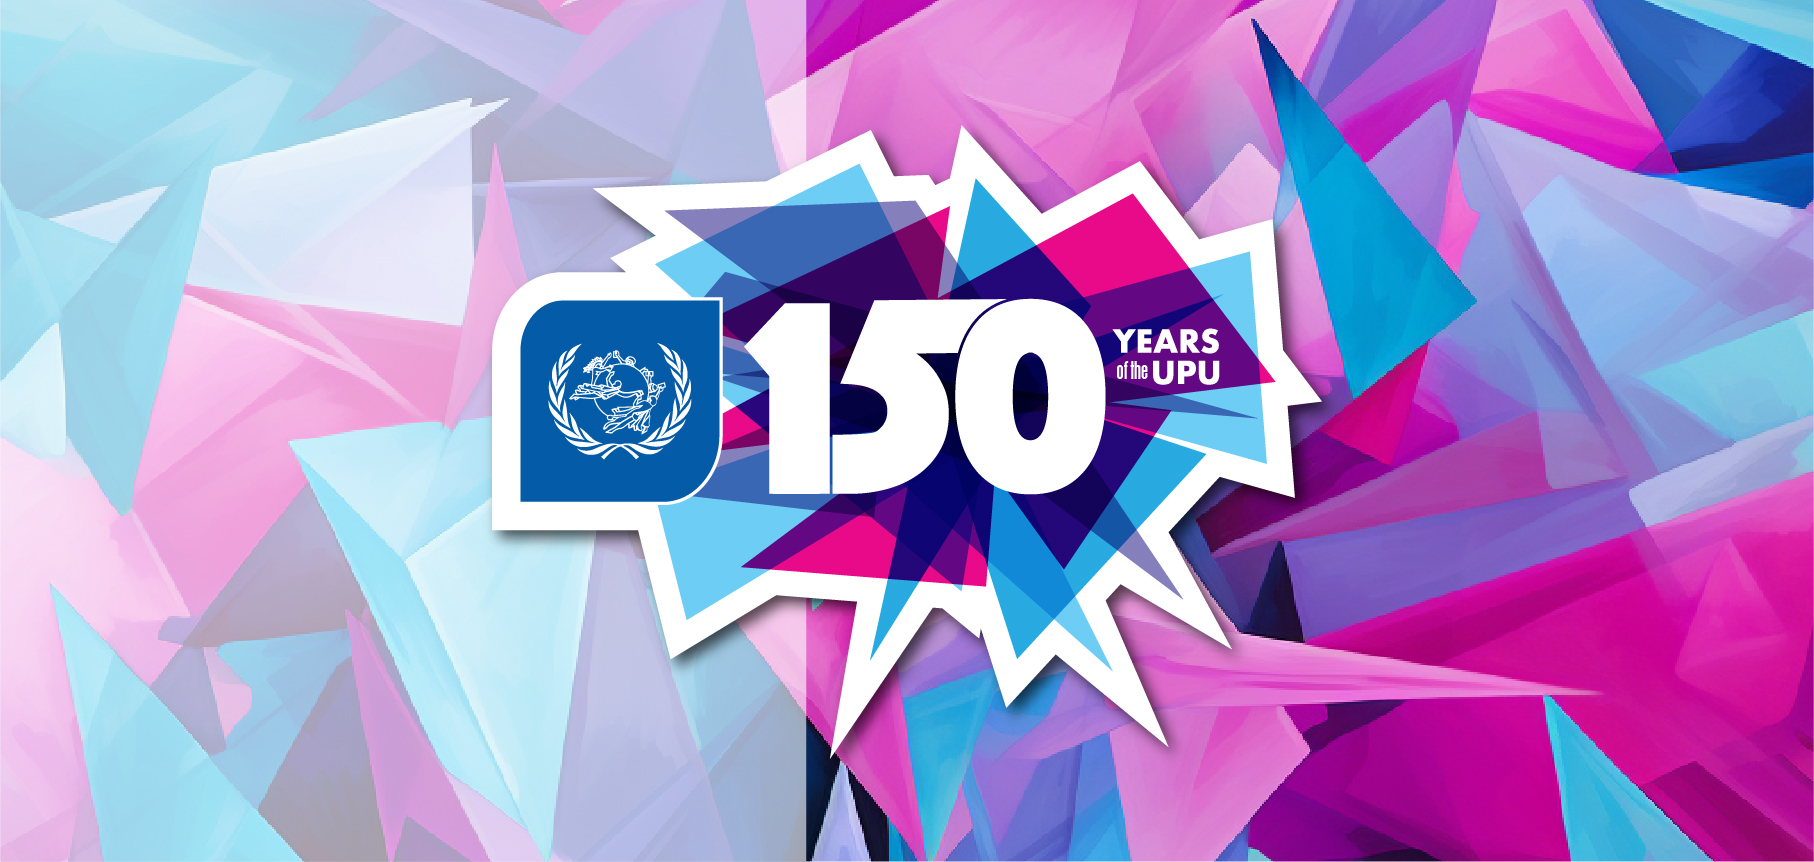 Các hoạt động của UPU hướng tới kỷ niệm 150 năm thành lập Liên minh Bưu chính Thế giới - UPU (1874-2024)- Ảnh 1.